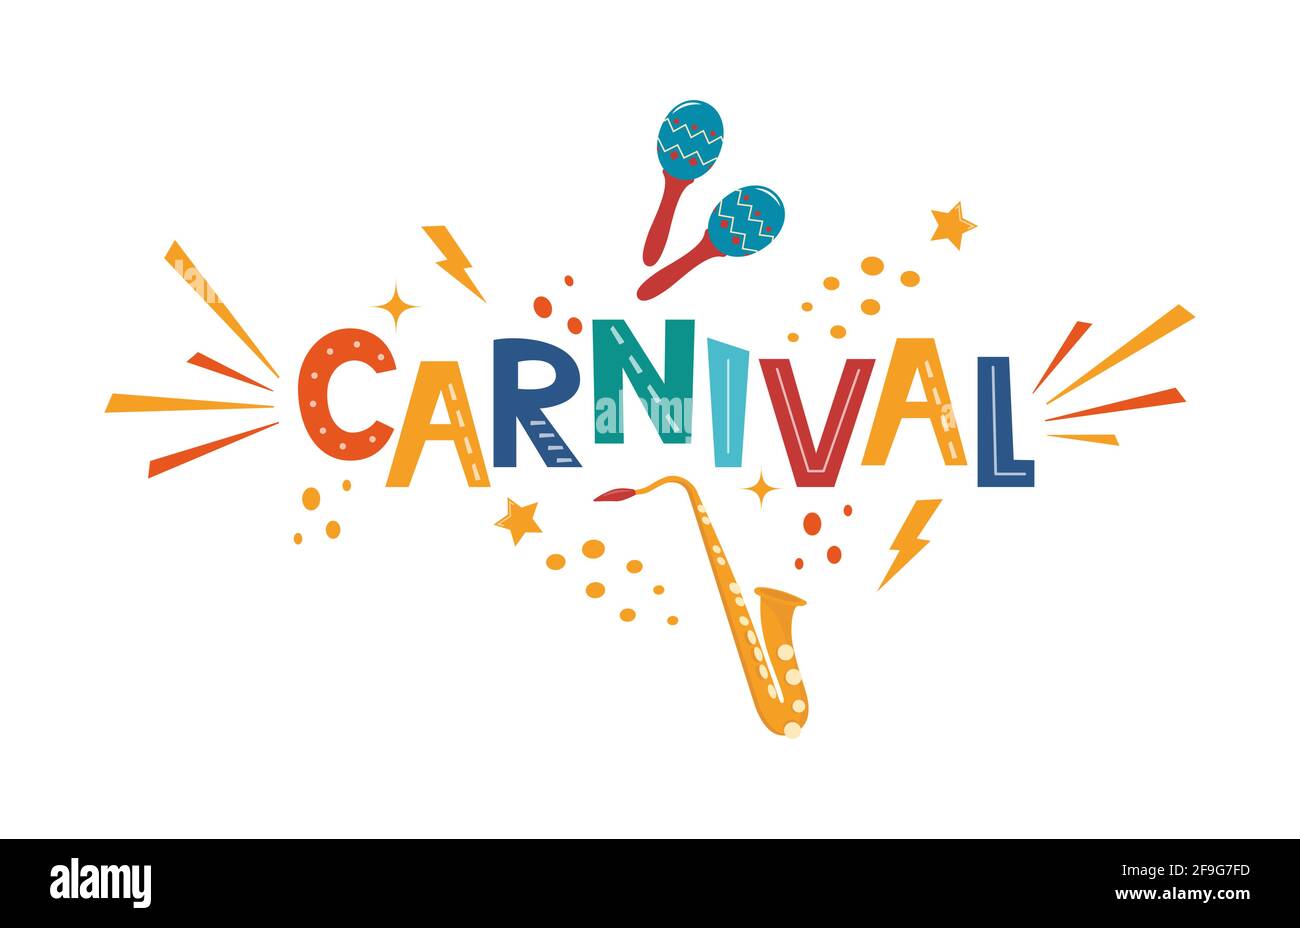 Carnival scritta disegnata a mano per poster, logo, biglietto di invito, banner. Carnevalesco con elementi di festa colorati - maracas, sassofono, confetti, sp Illustrazione Vettoriale